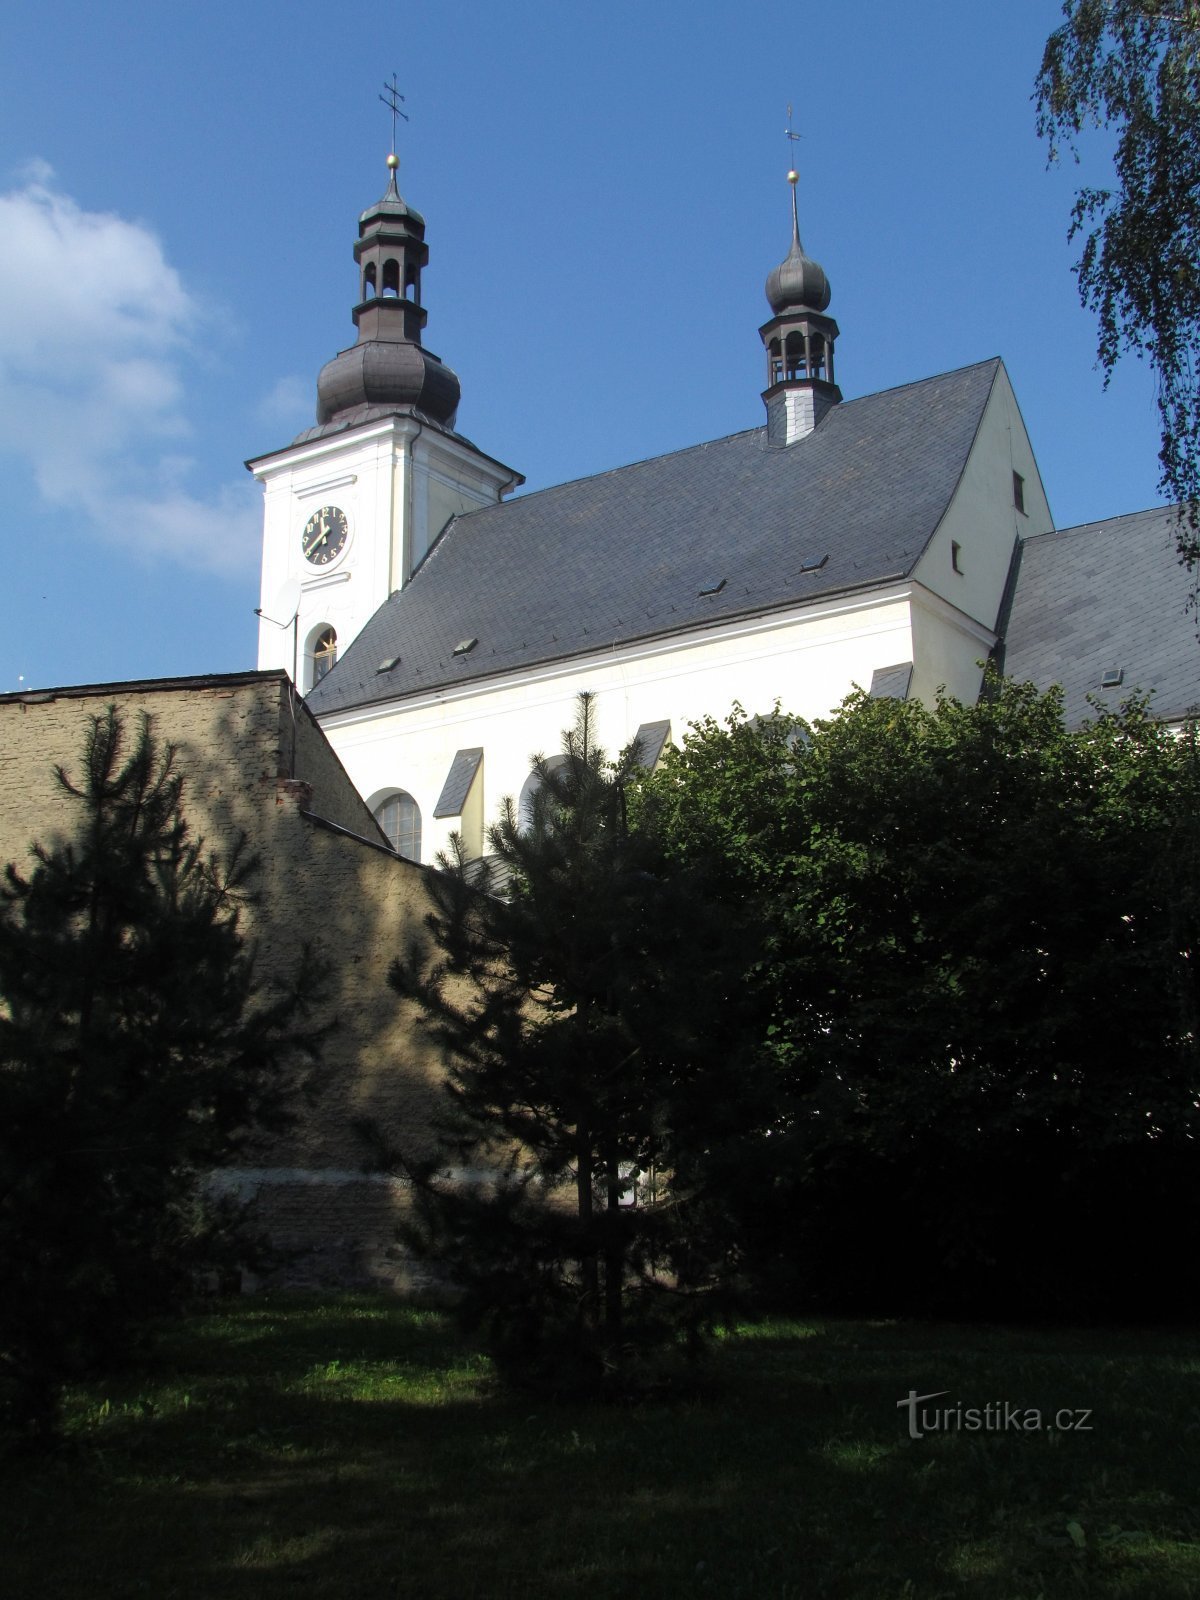 Odry - nhà thờ thánh Bartholomew